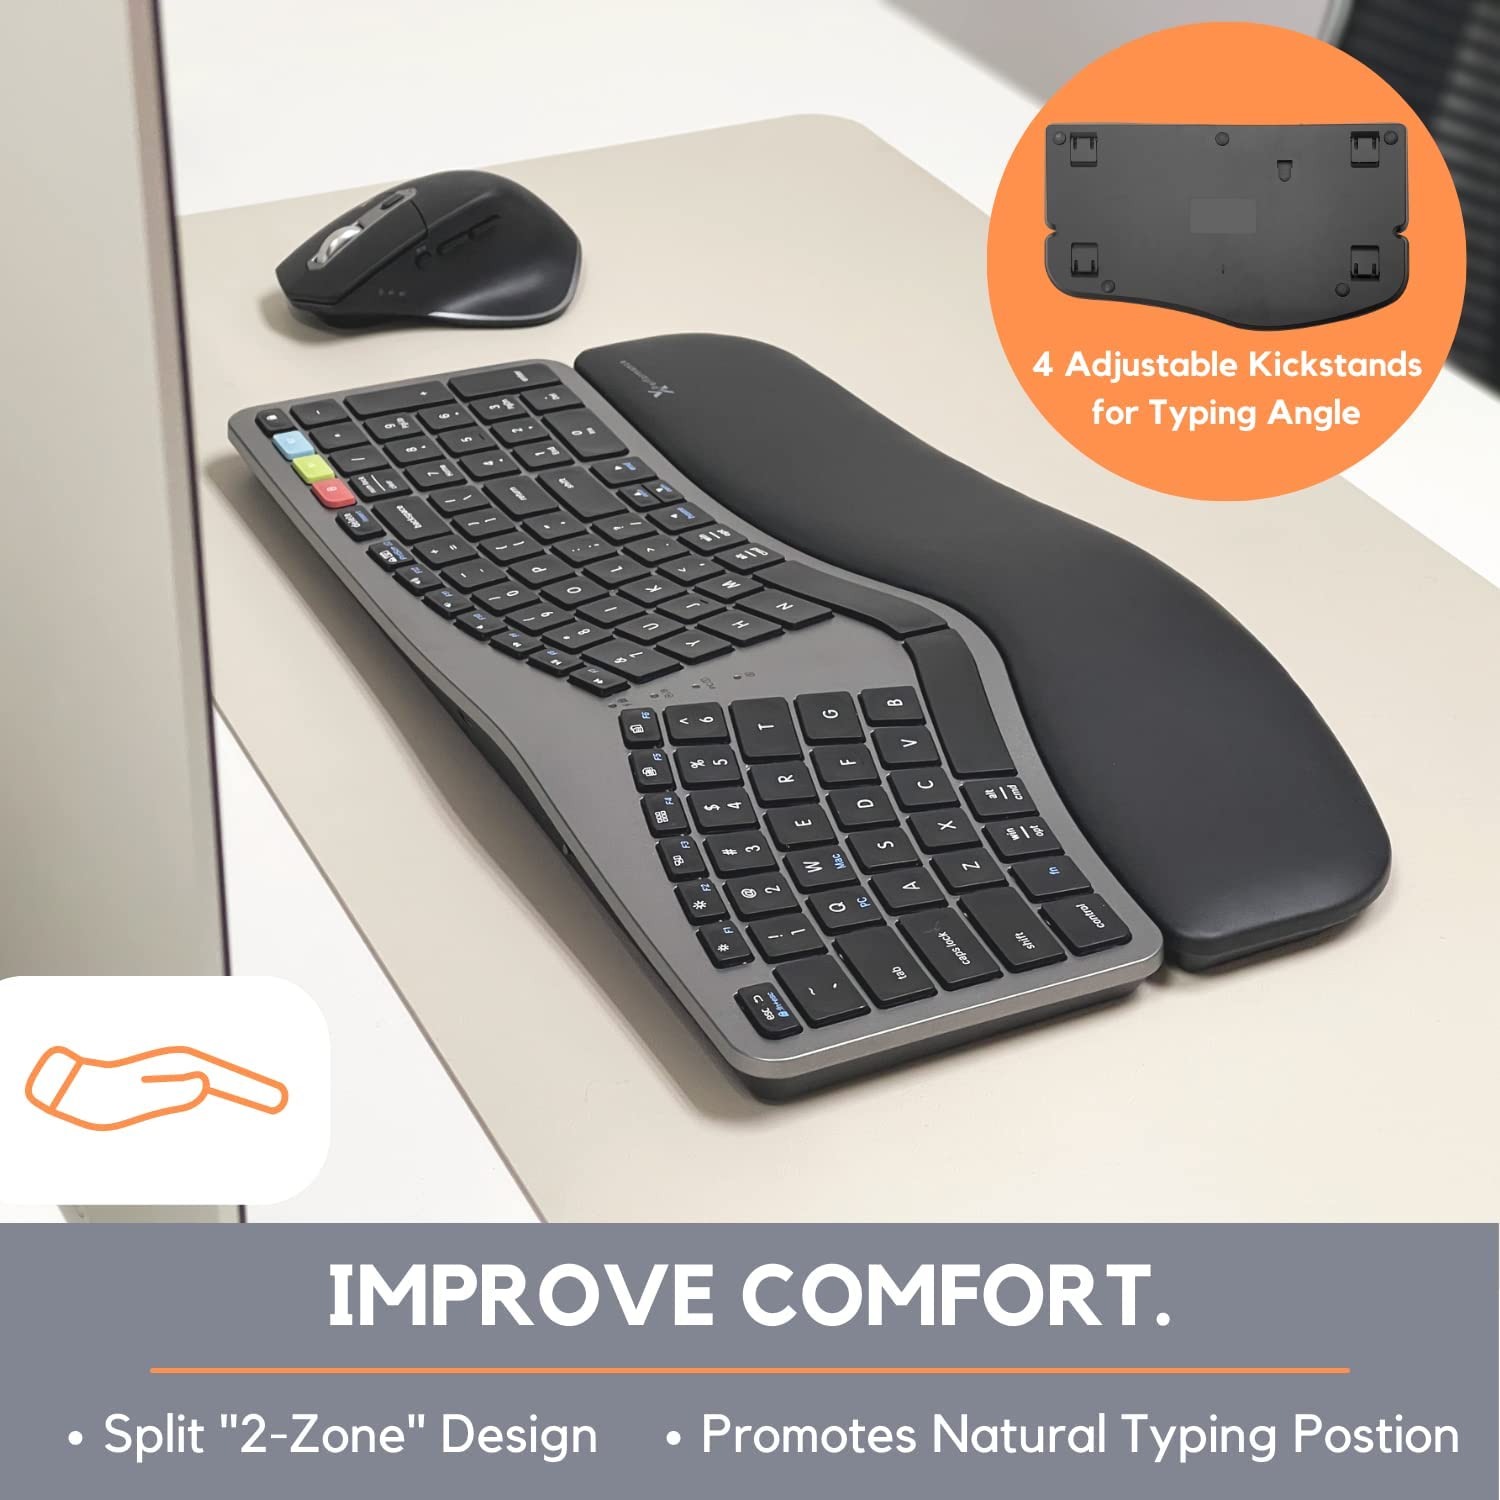 X9 Performance Clavier ergonomique sans fil – Votre confort compte